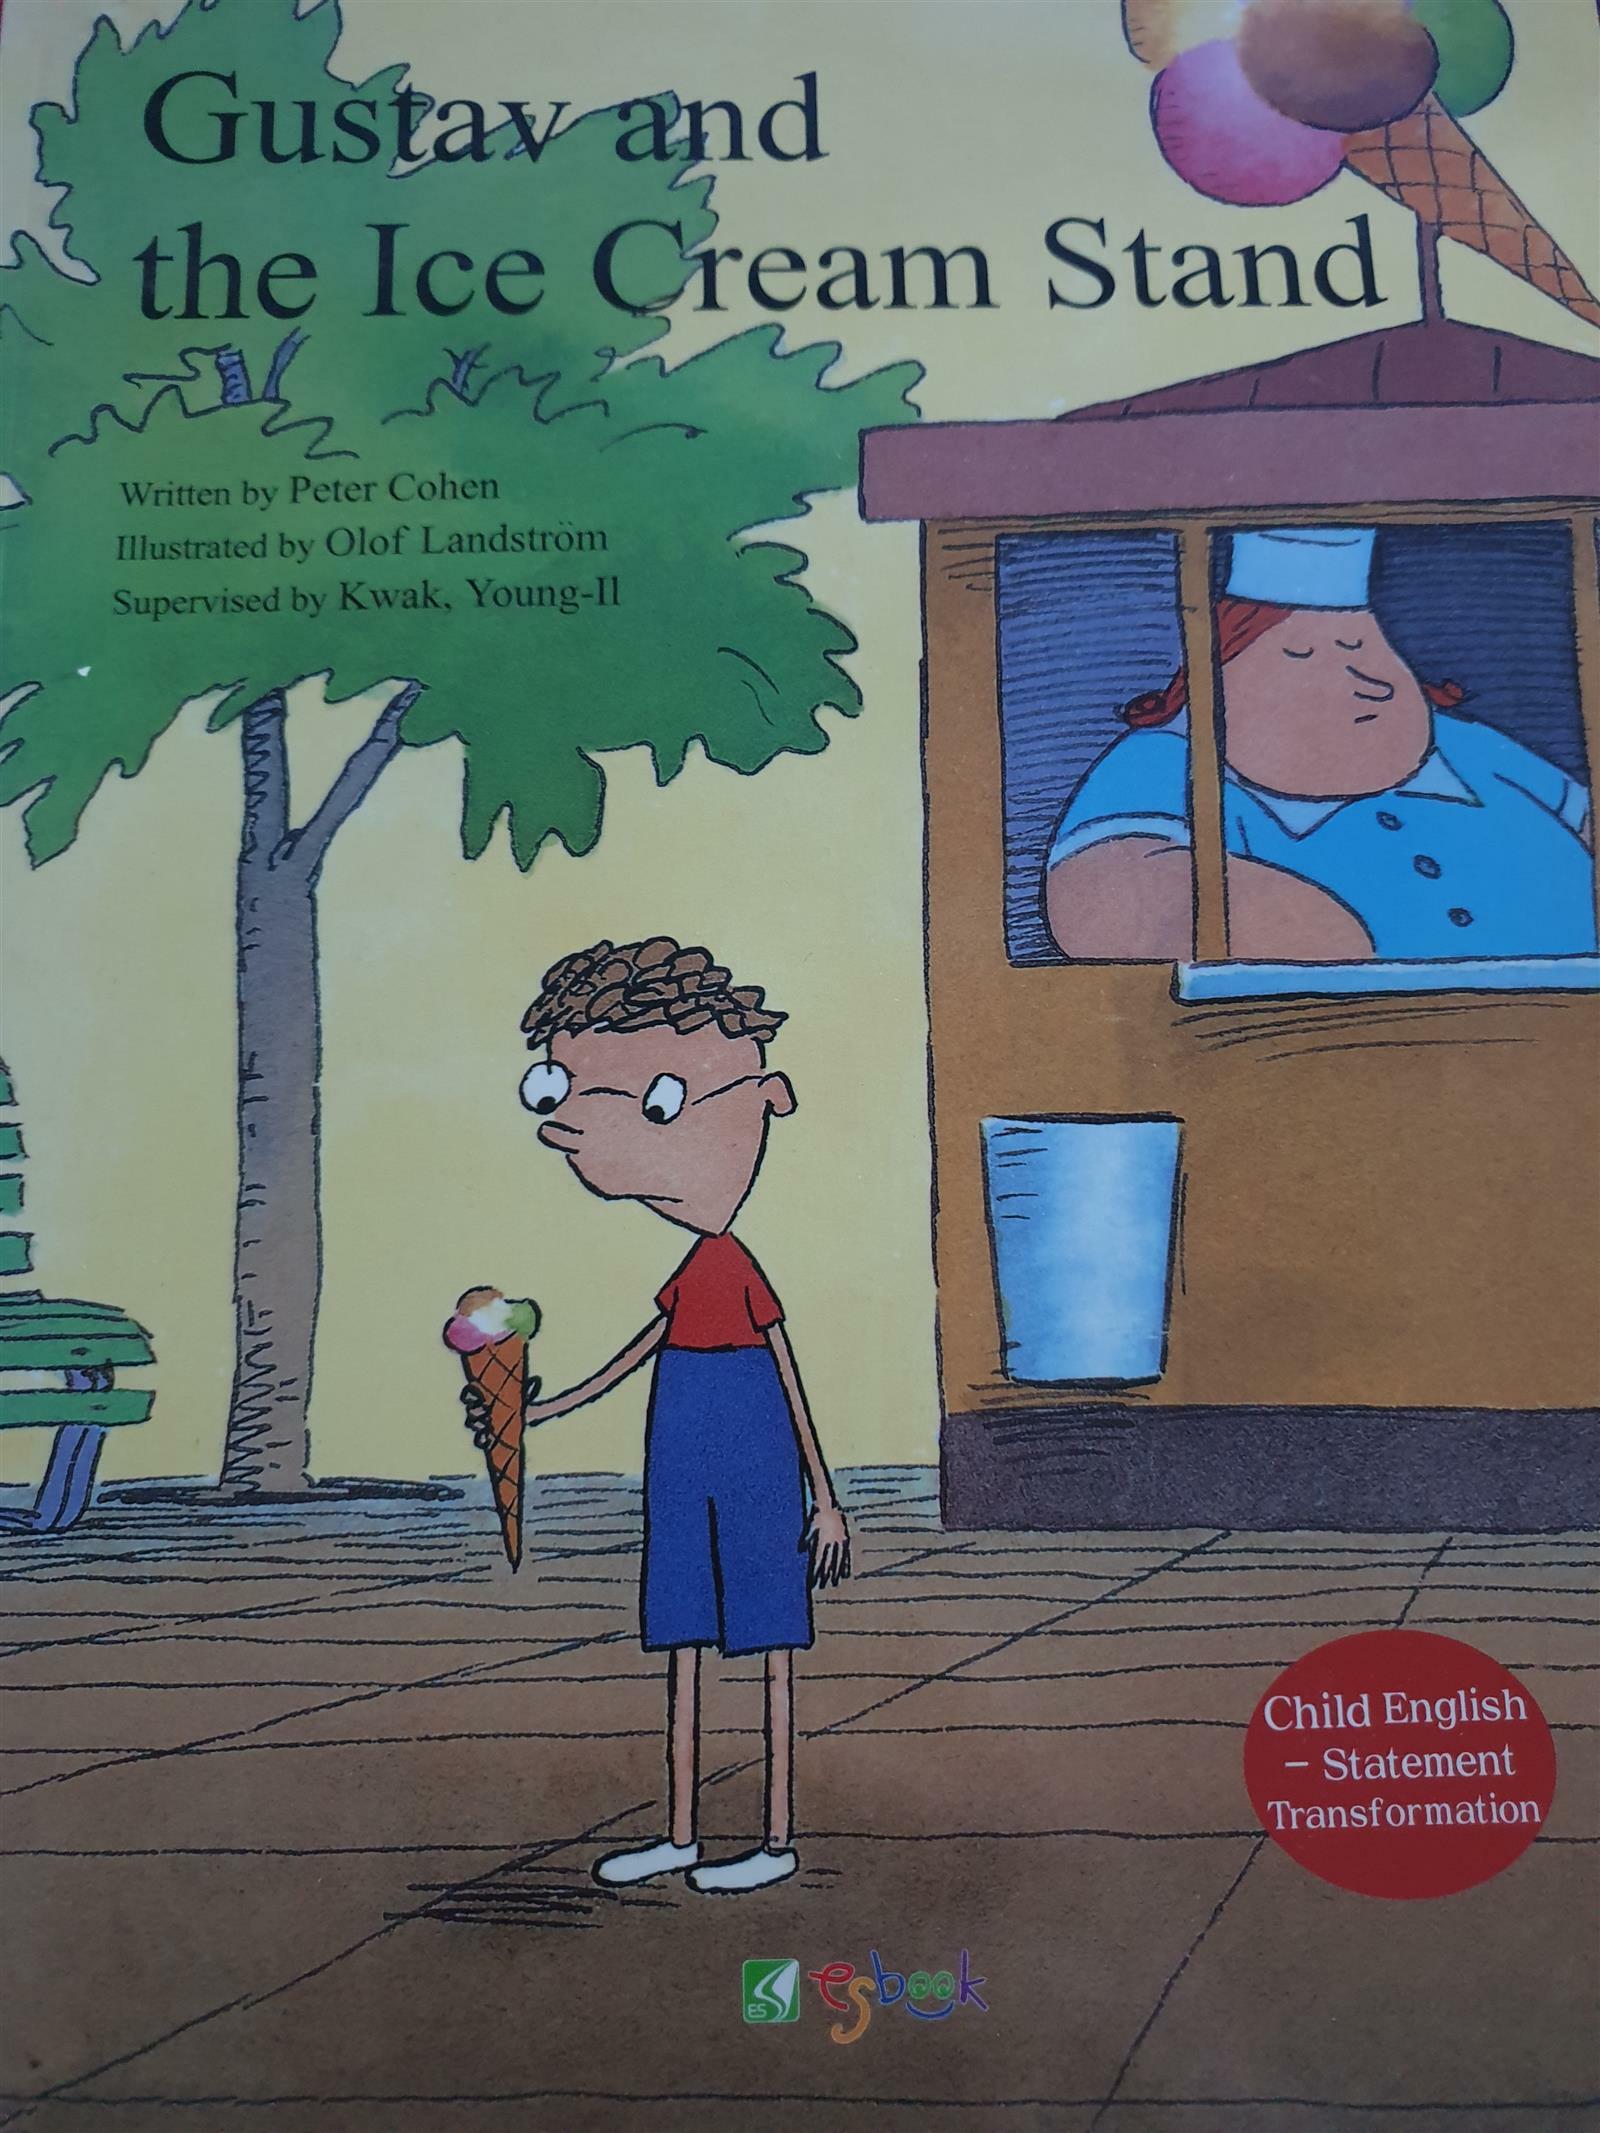 Gustav and the ice cream stand